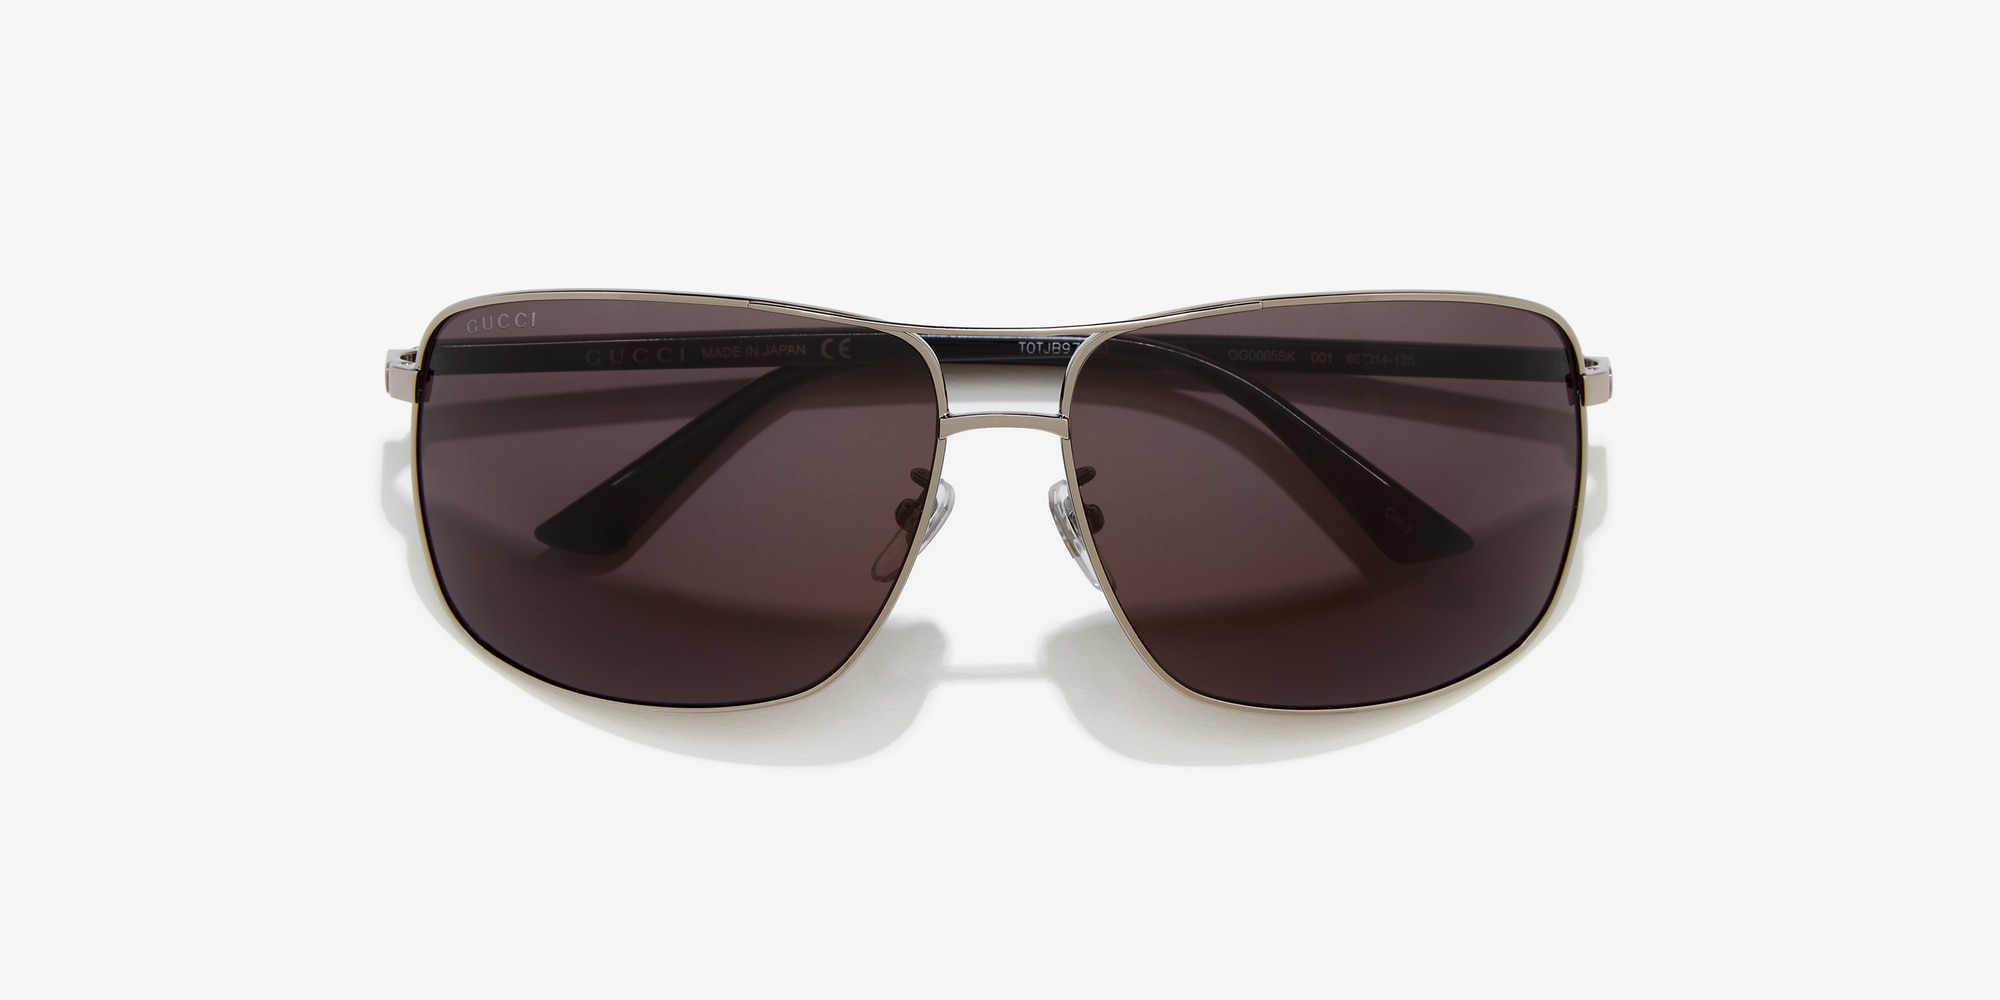 gg0065sk sunglasses